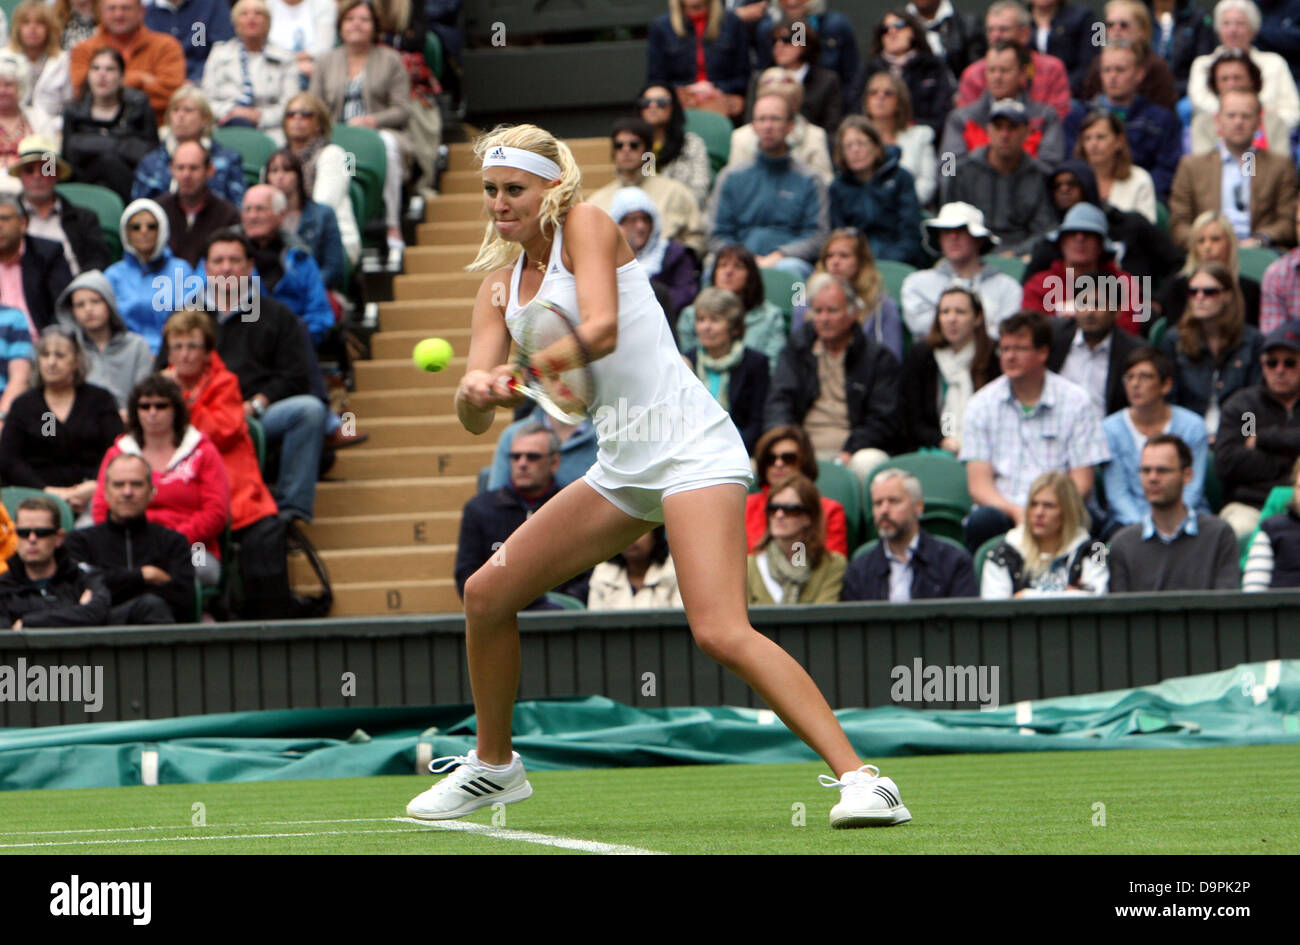 Londres, Royaume-Uni. 24 Juin, 2013. Maria Sharapova (RUS) contre Kristina Miadenovic(Fra) au cours de la première journée de la Le tennis de Wimbledon 2013 tenue à l'All England Lawn Tennis et croquet Club, Londres, Angleterre, Royaume-Uni. Credit : Action Plus Sport/Alamy Live News Banque D'Images